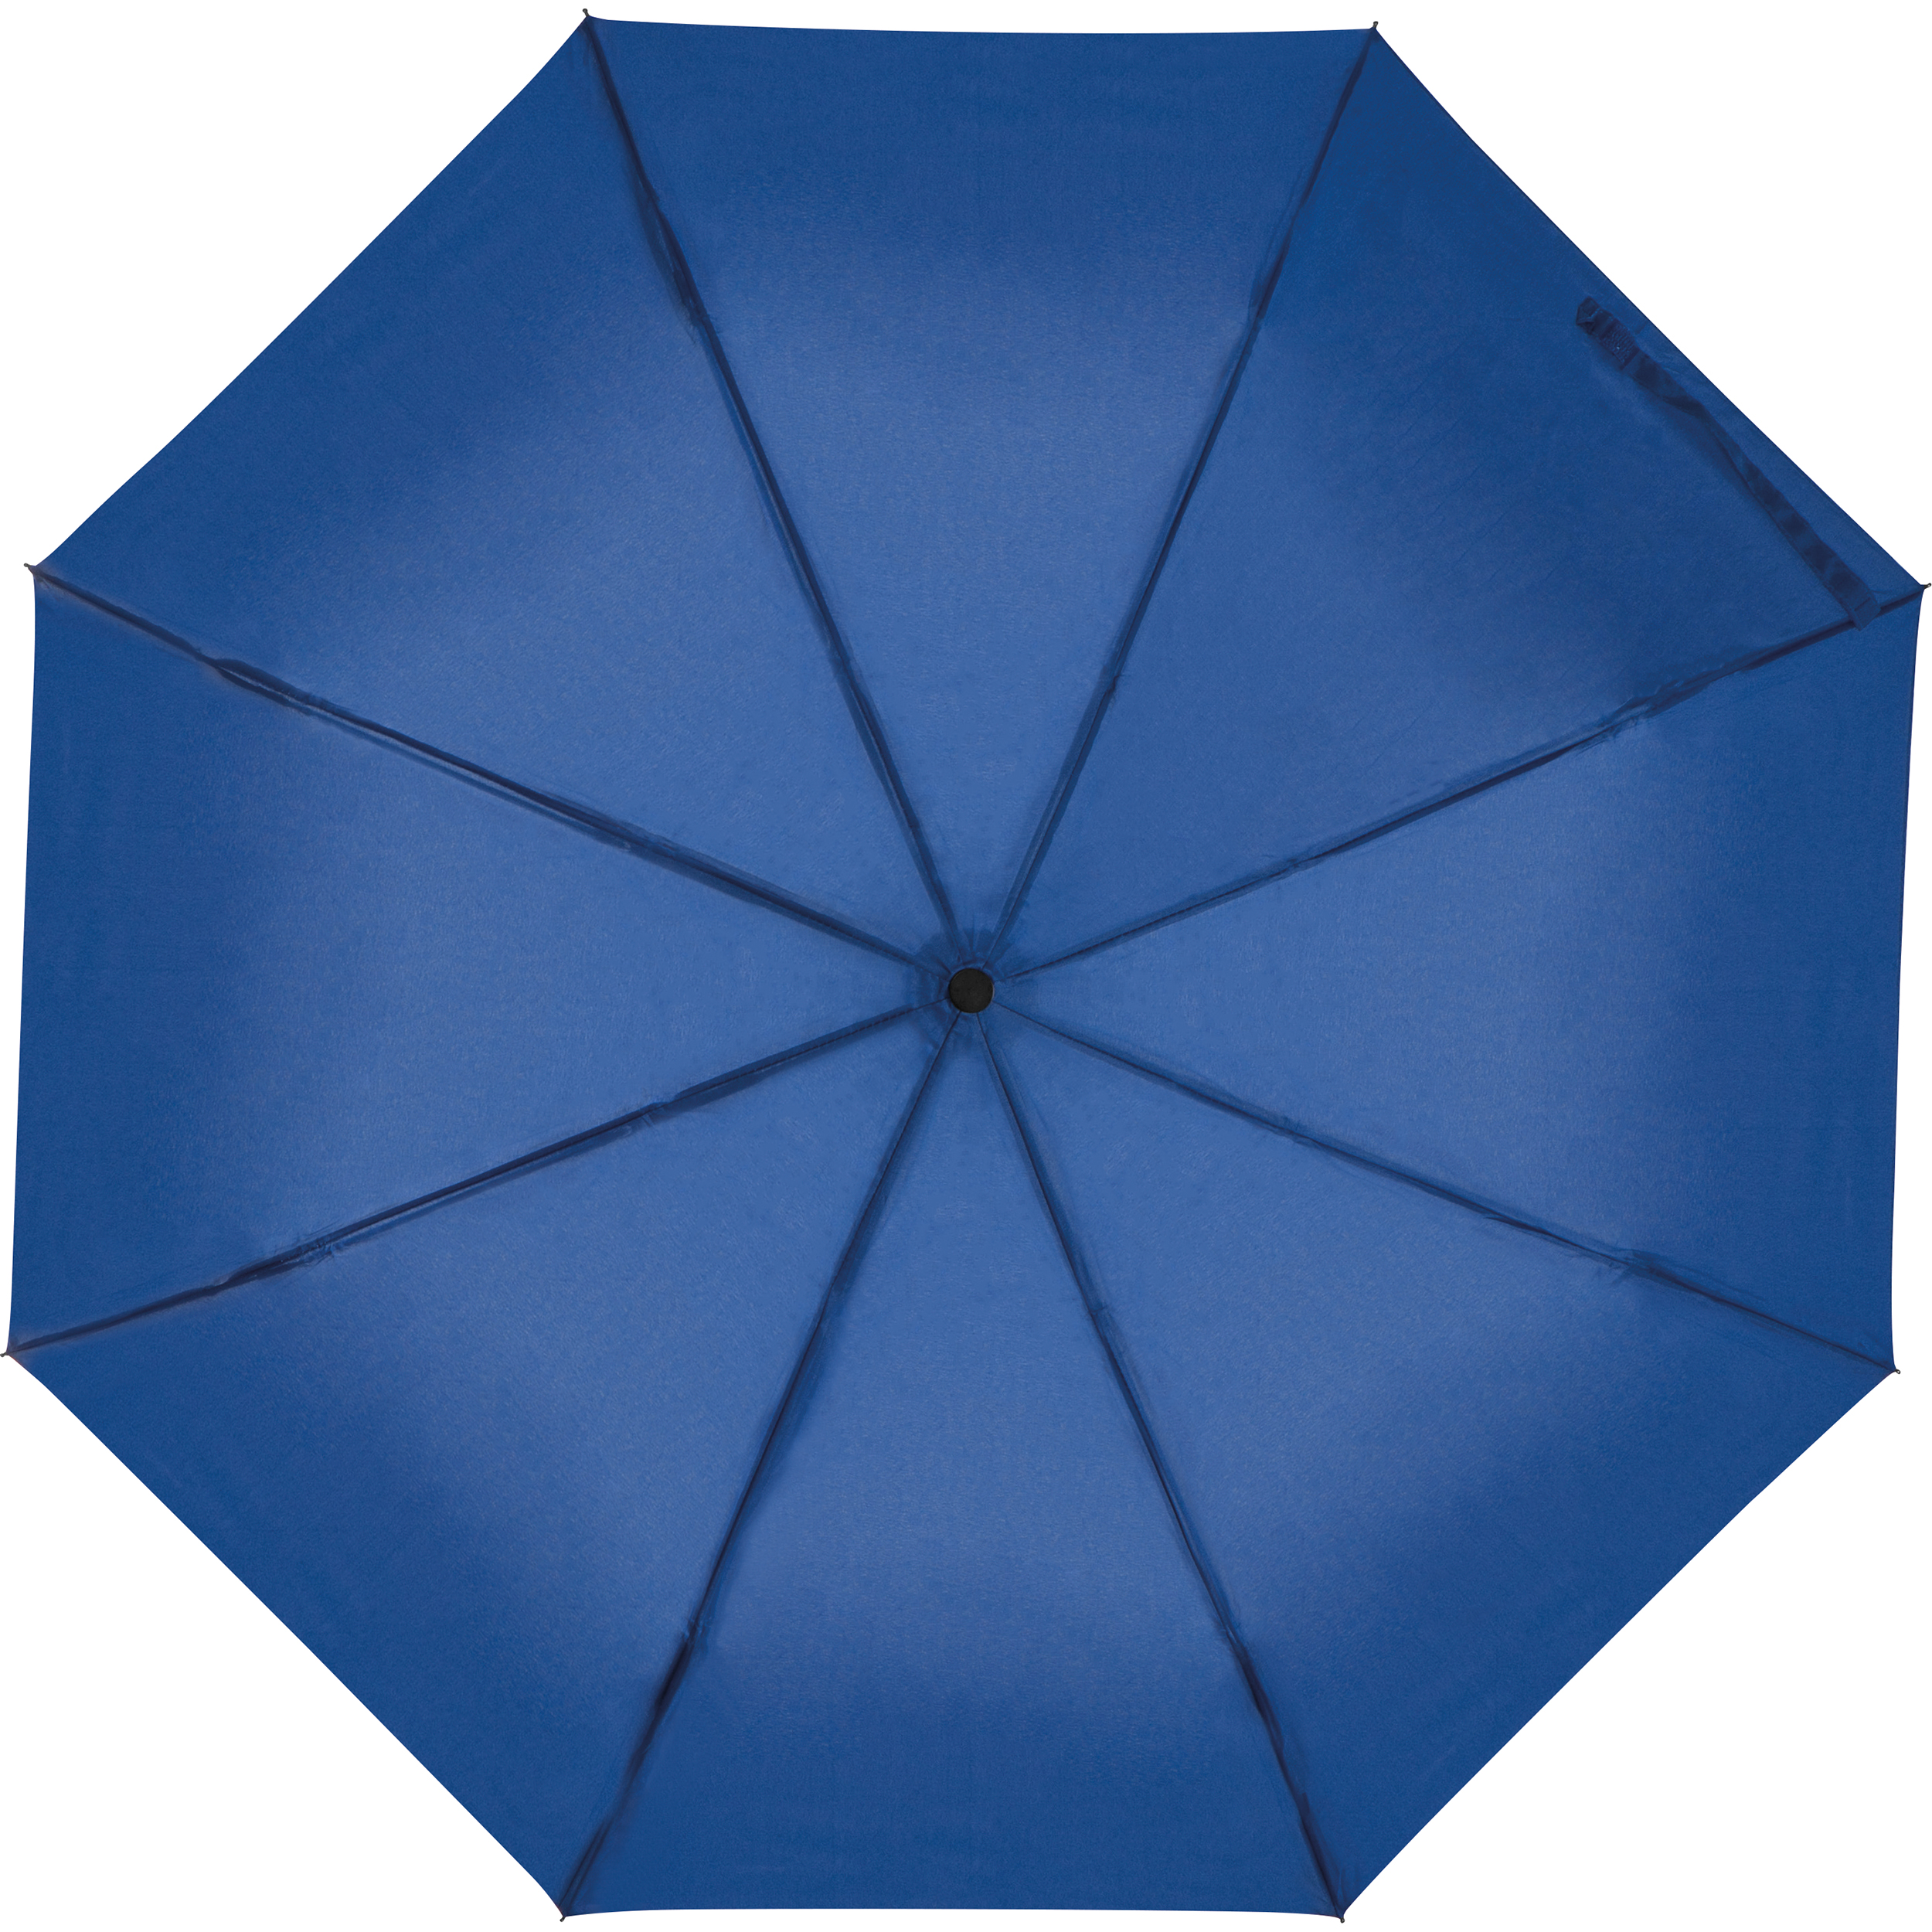 Paraplu met greep als karabijnhaak